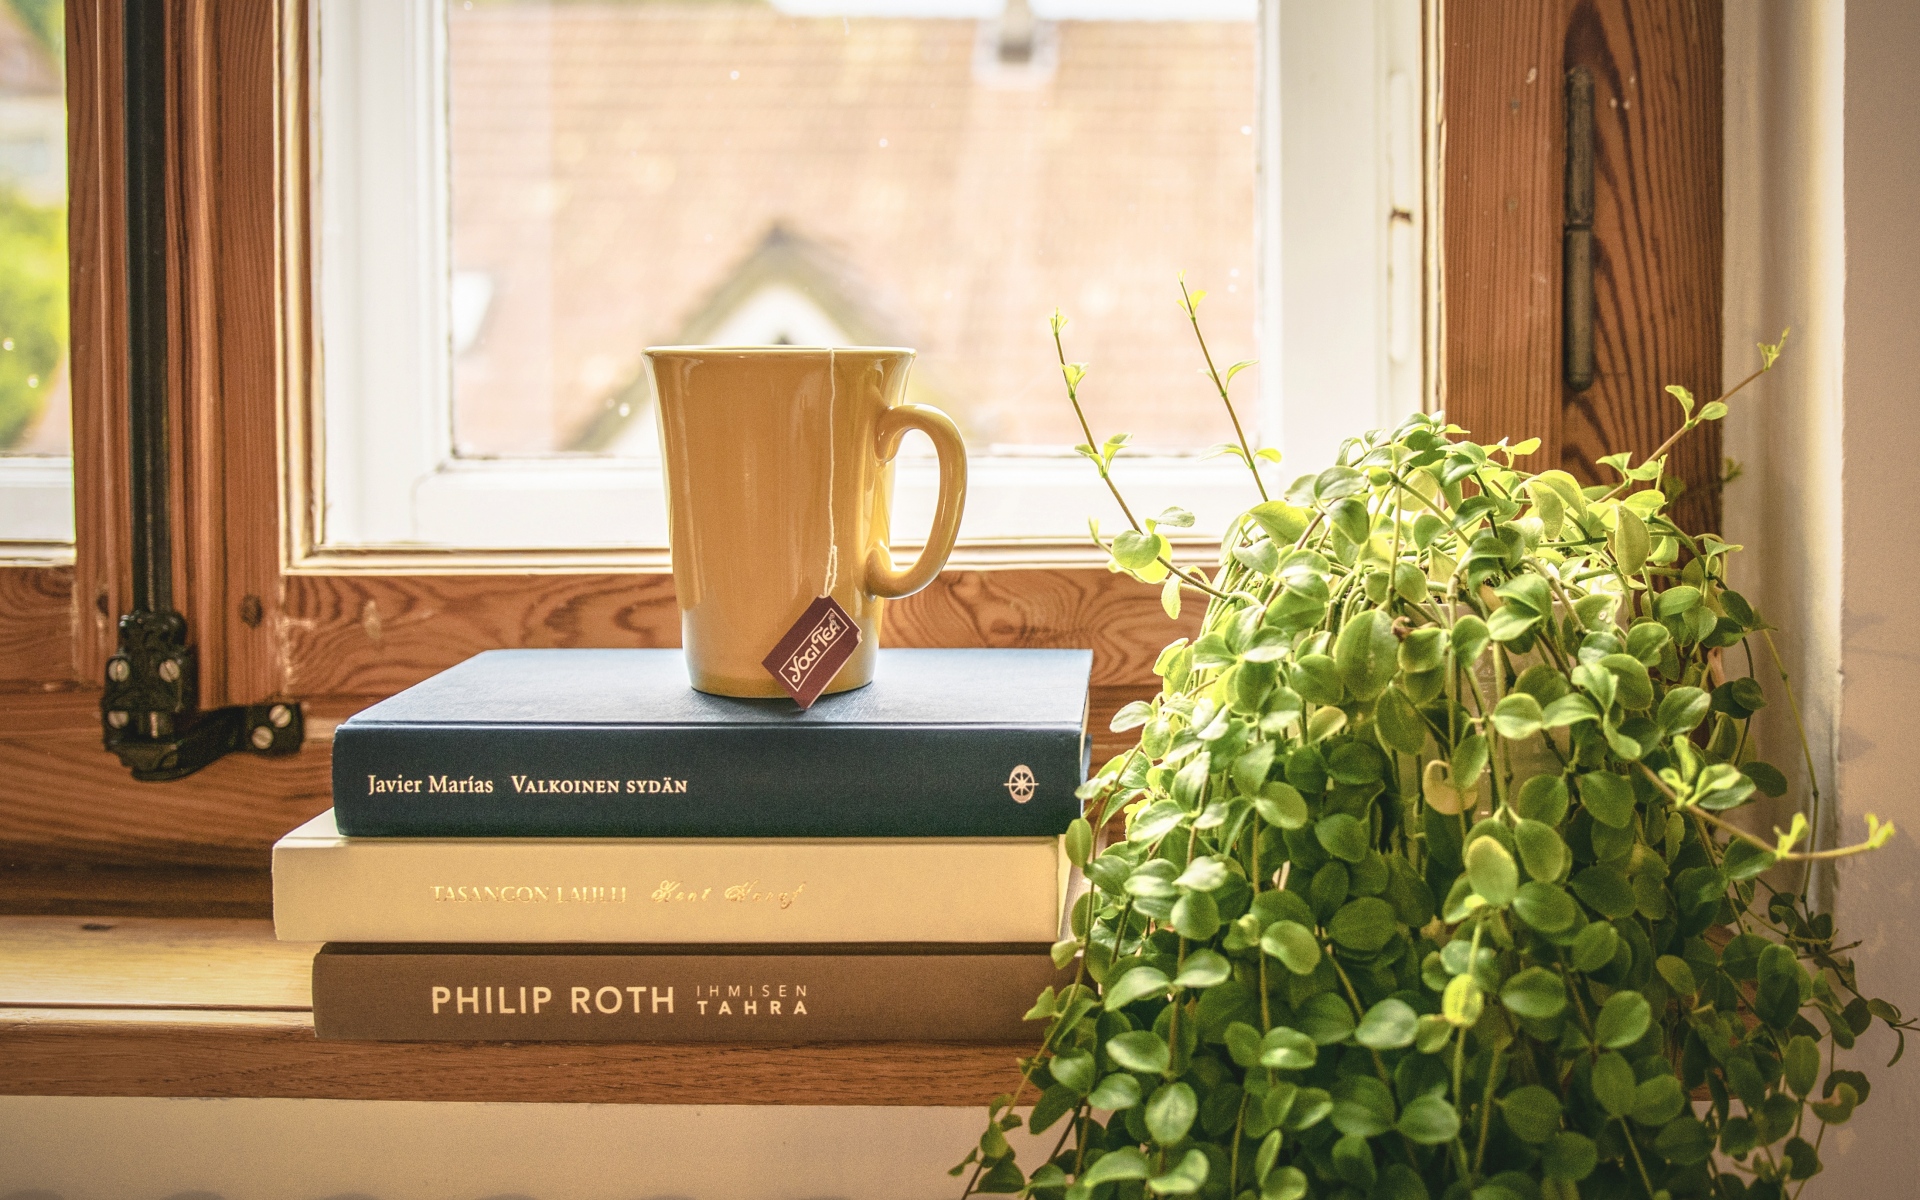 Картинки Книга, чашка, чай, подоконник, окно, комнатное растение фото и обои на рабочий стол